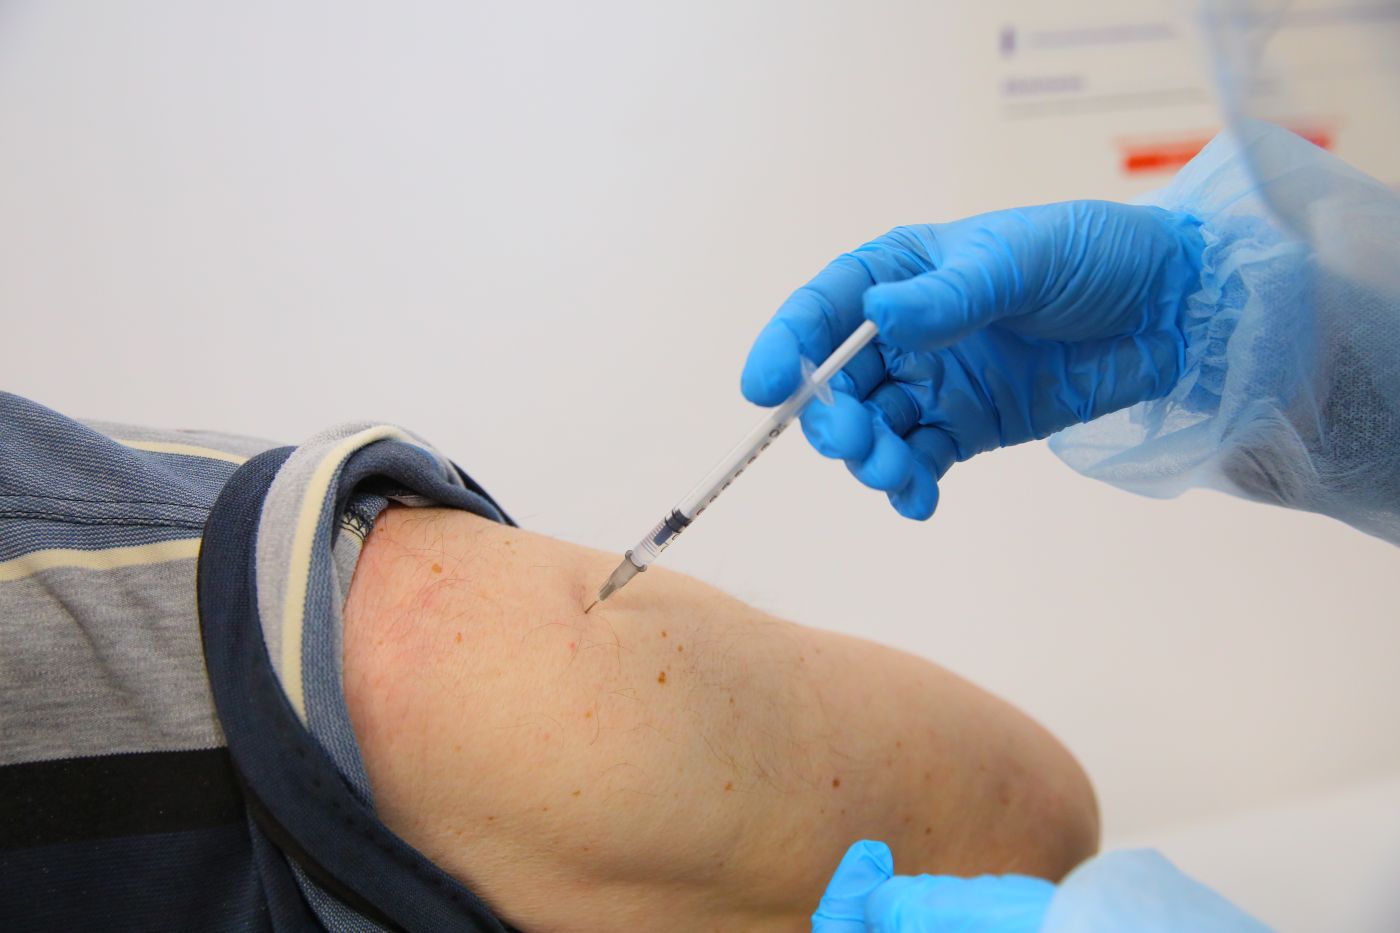 Au încurcat vaccinul: prima doză cu Pfizer, rapel cu Moderna